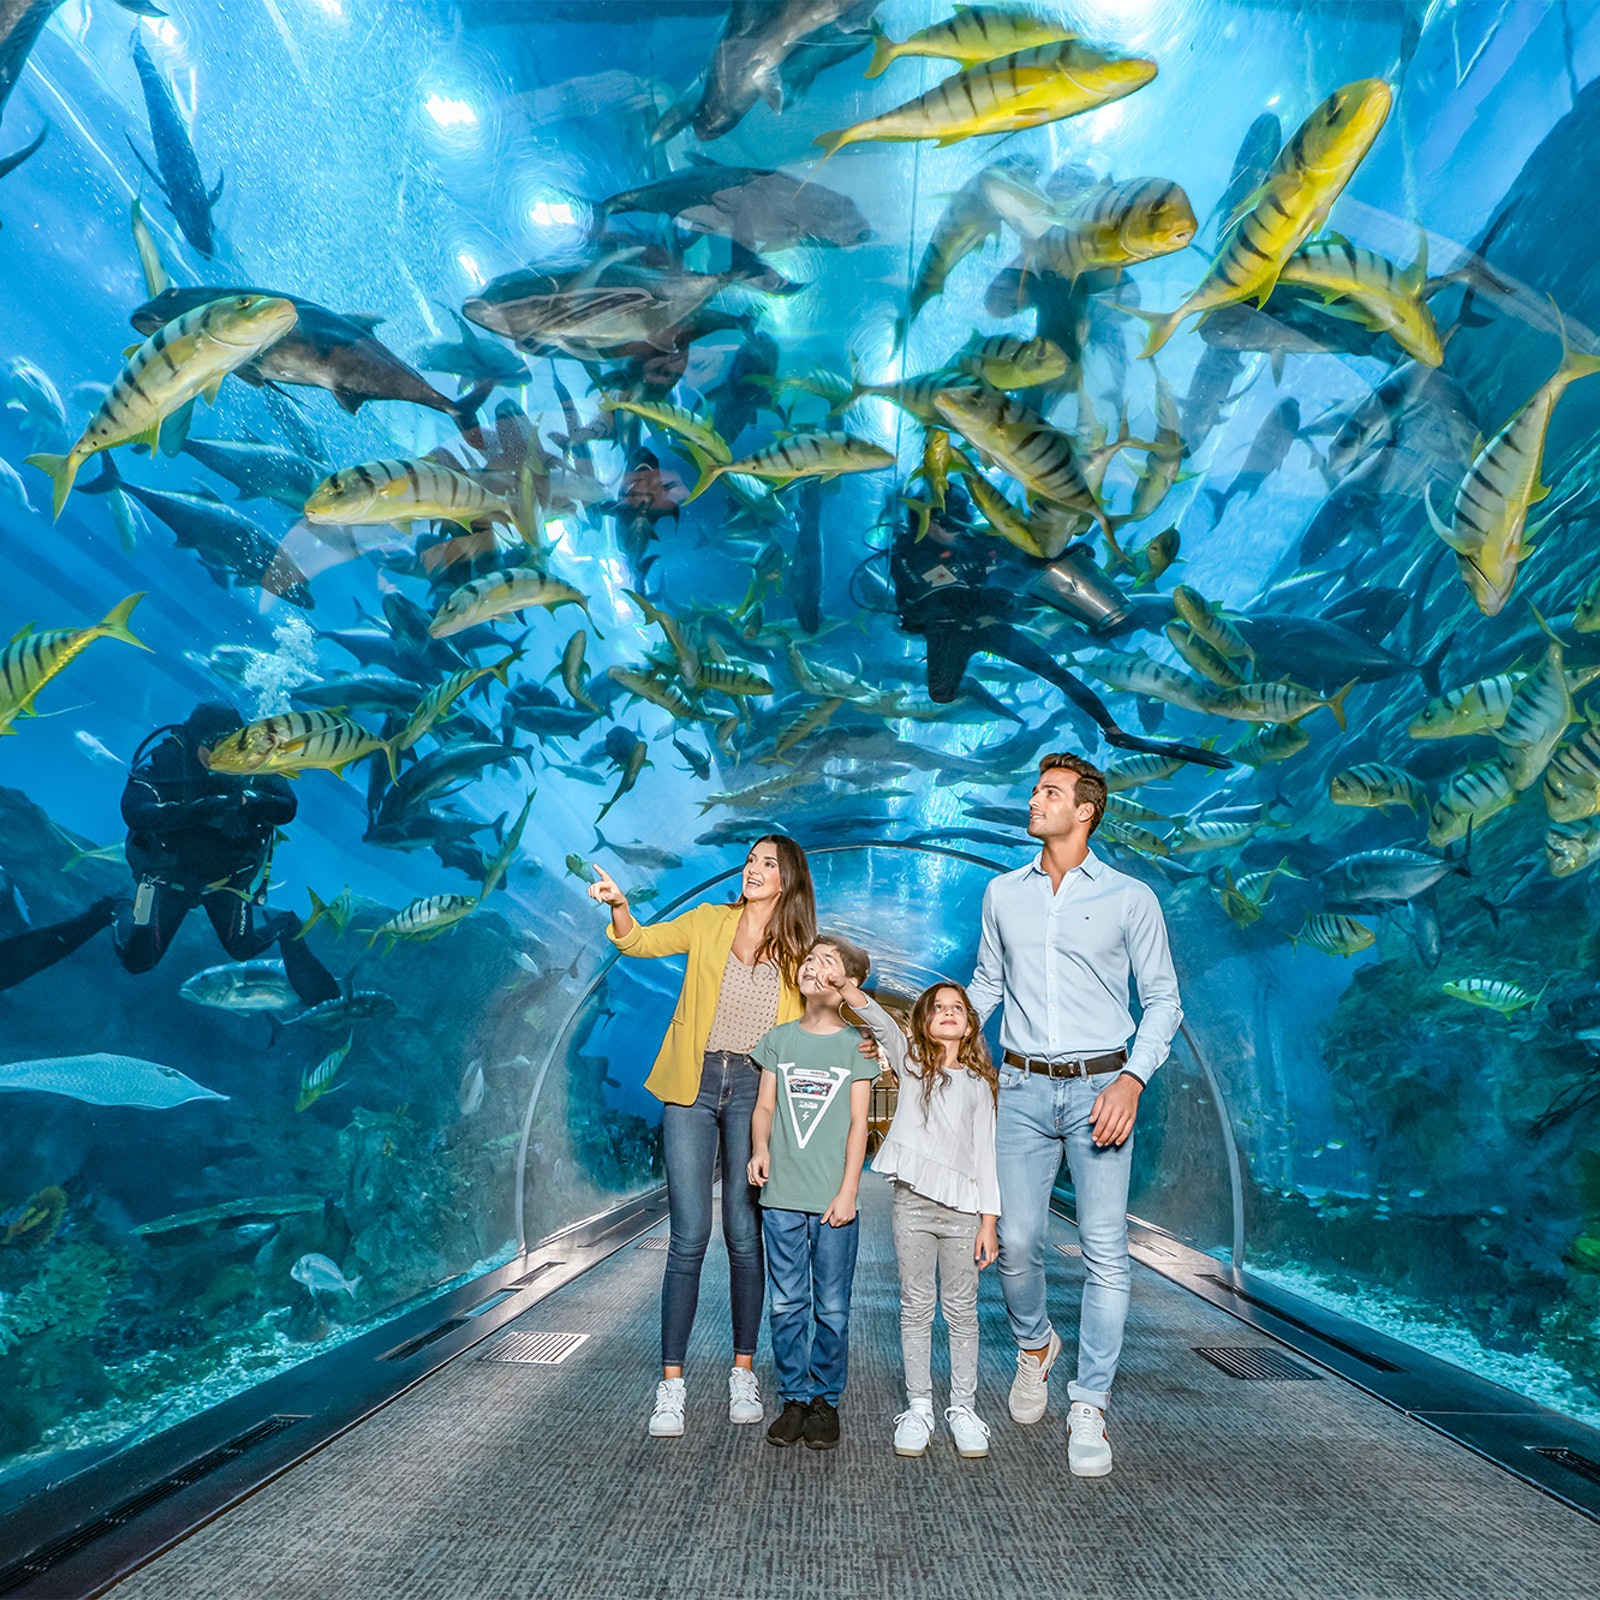 Dubai Aquarium & Underwater Zoo in United Arab Emirates